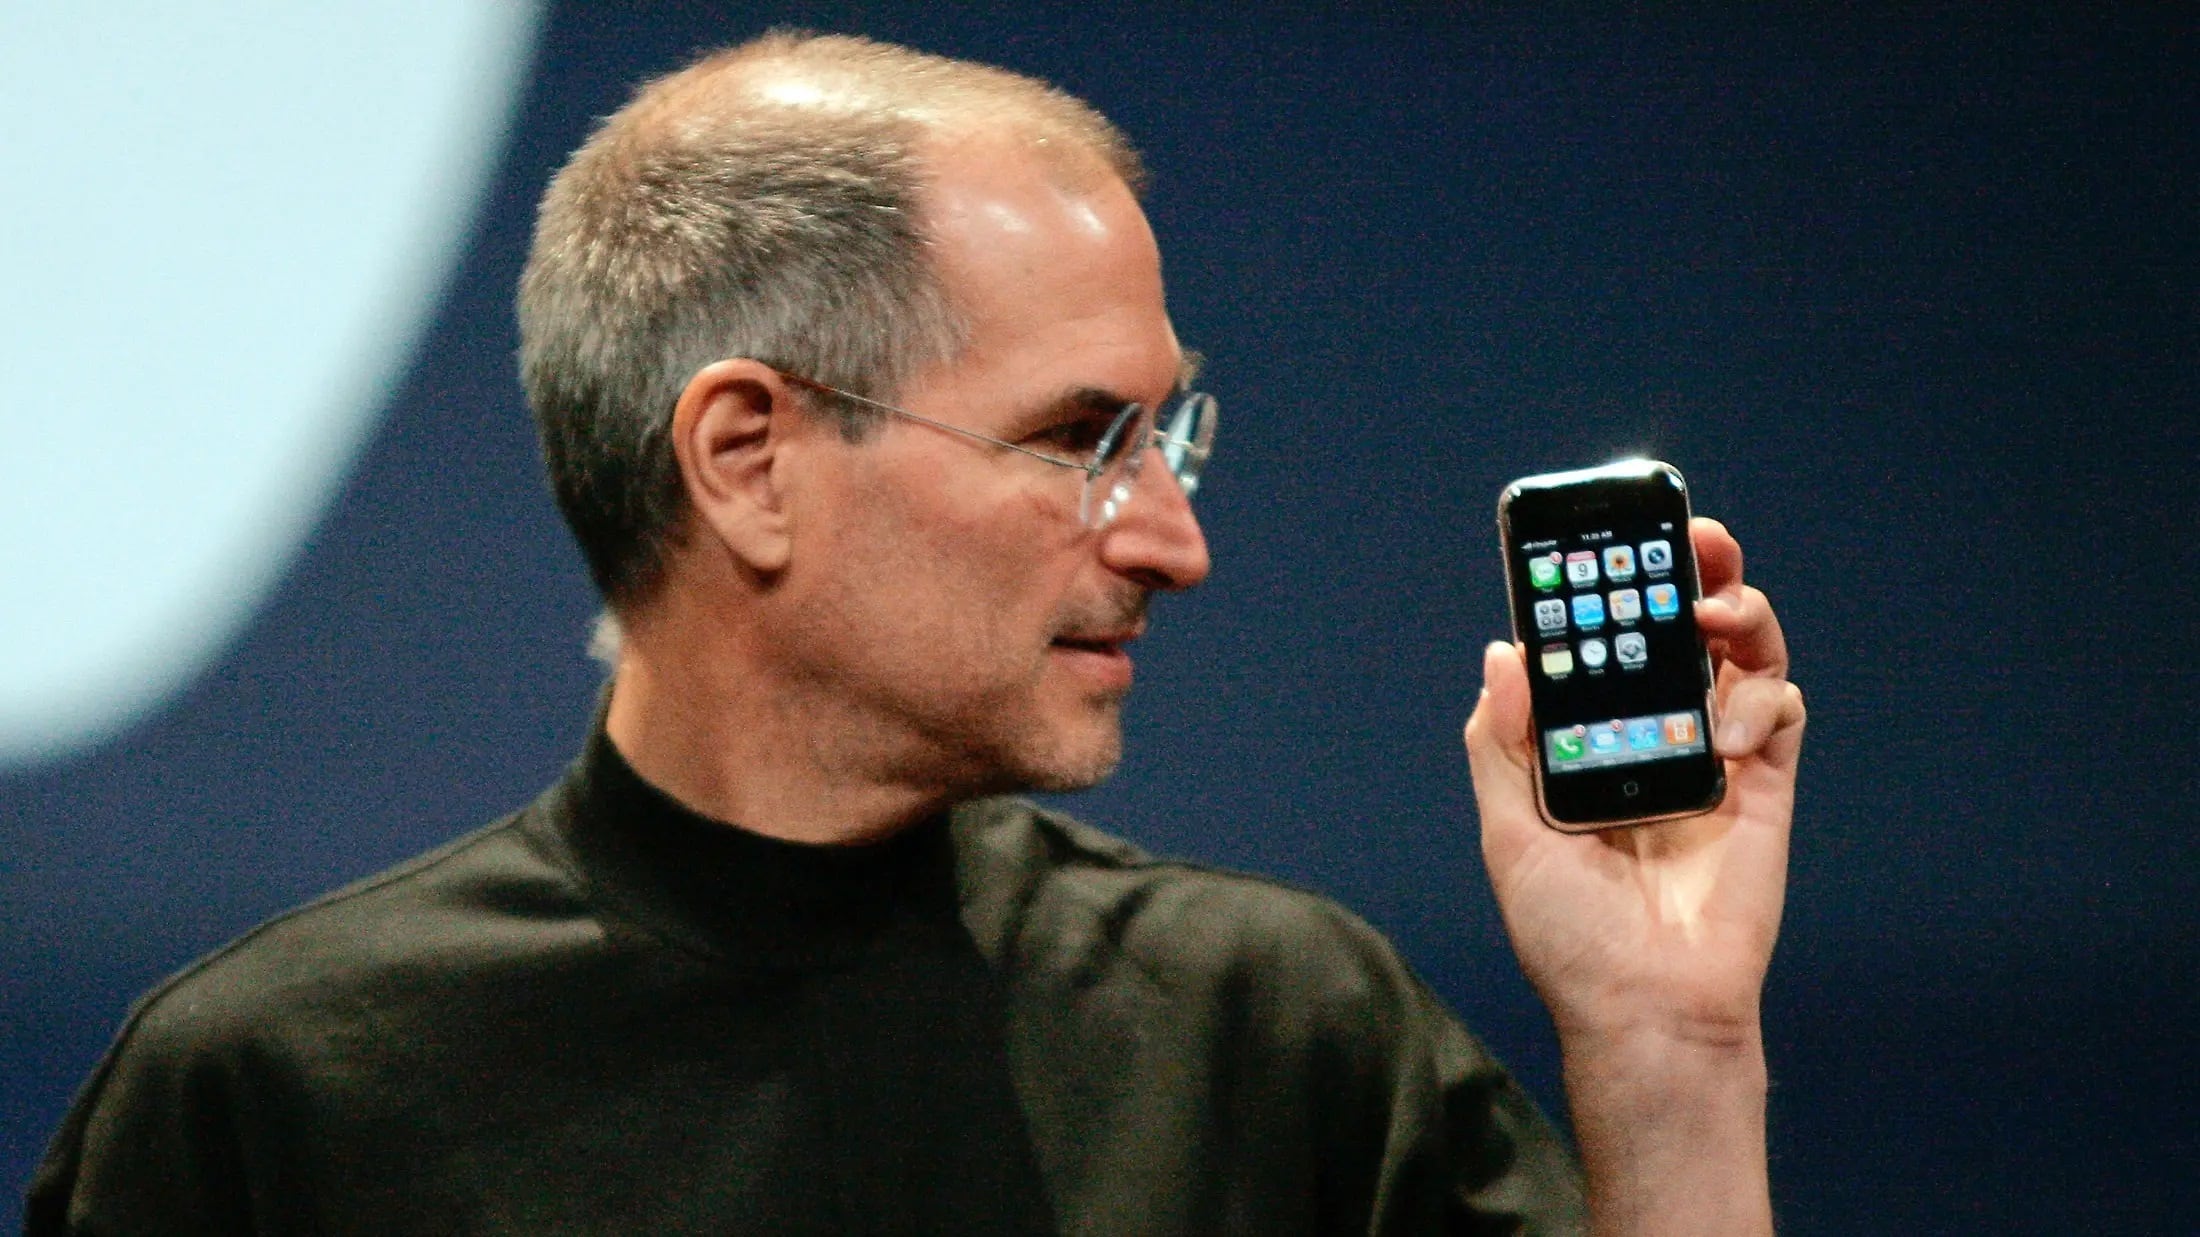 El legendario fondo de pantalla con los peces payaso está dentro de iOS 16 como homenaje a Steve Jobs y se puede instalar fácil.